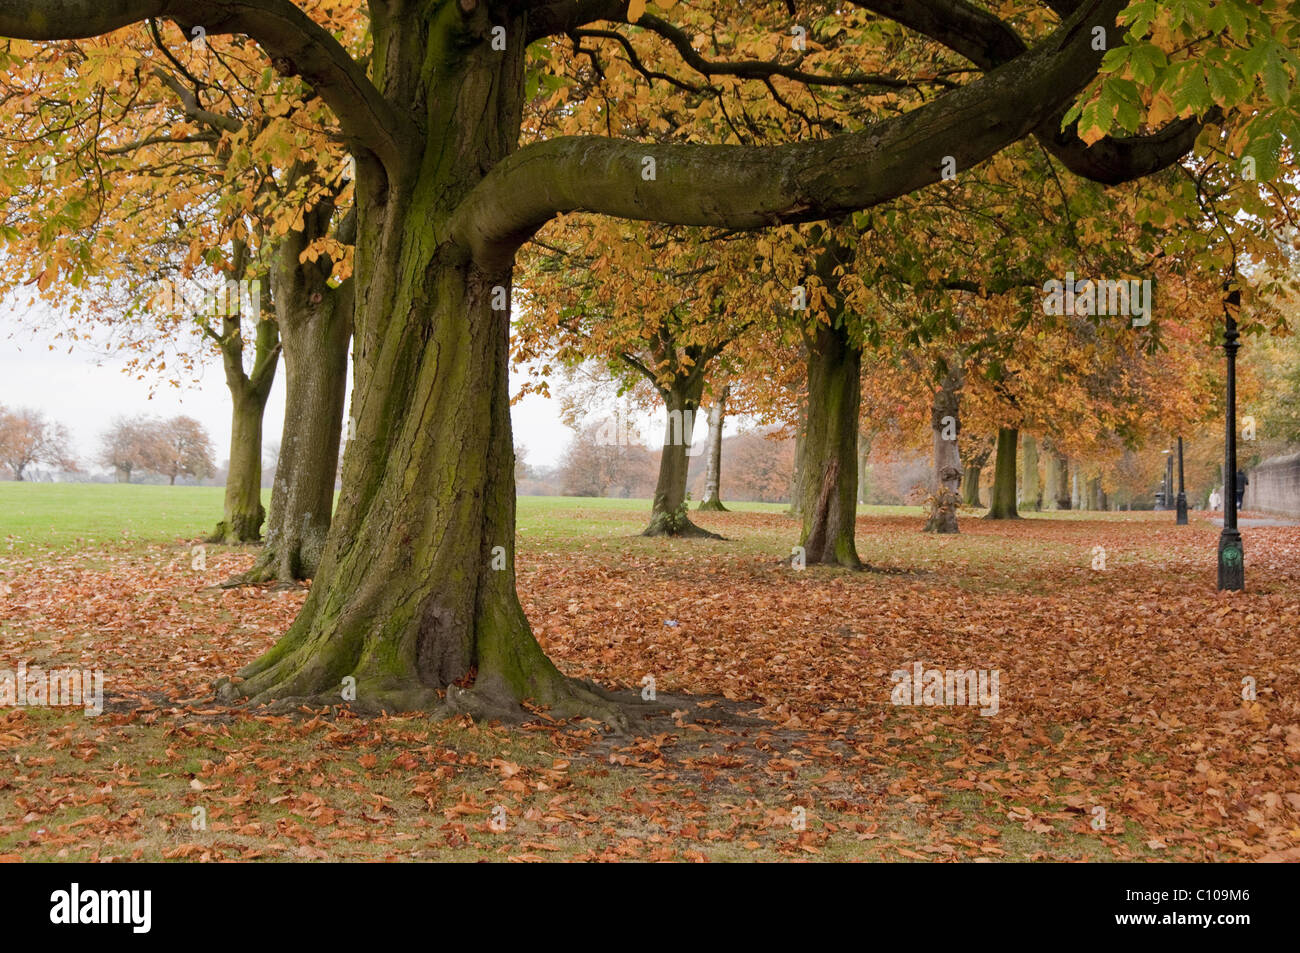 Avenue arborée dans un parc paysagé public pittoresque (couvert de feuillage d'automne coloré et tapis de feuilles mortes) - The Stray, Harrogate, Angleterre, GB, Royaume-Uni. Banque D'Images